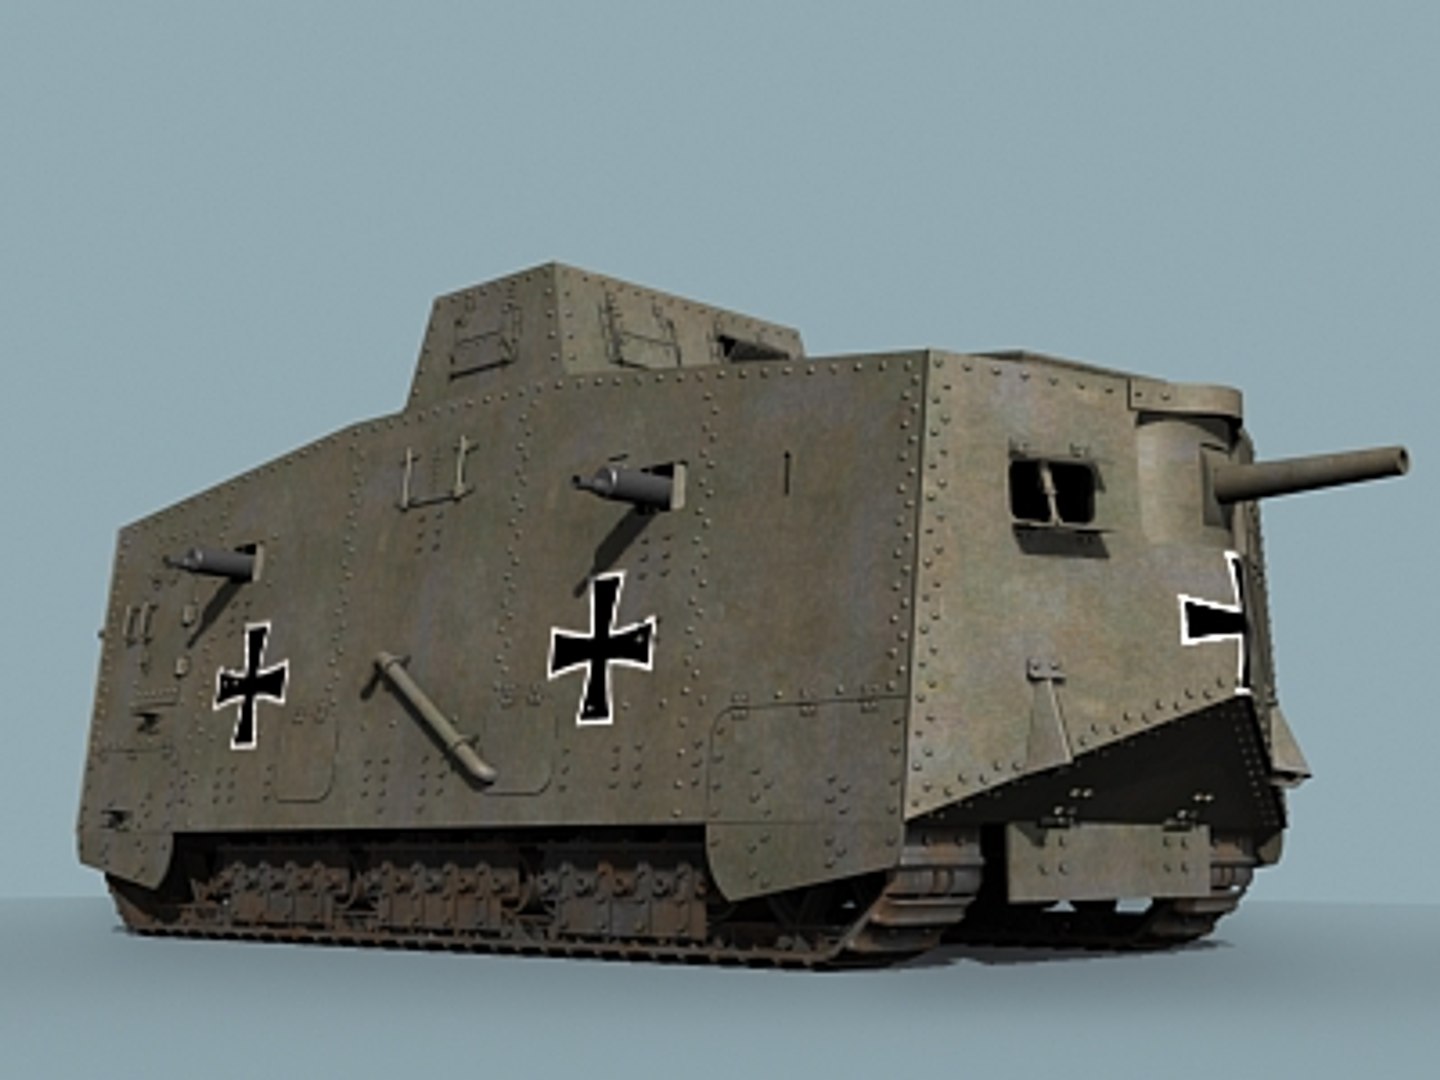 ww1 tanks german